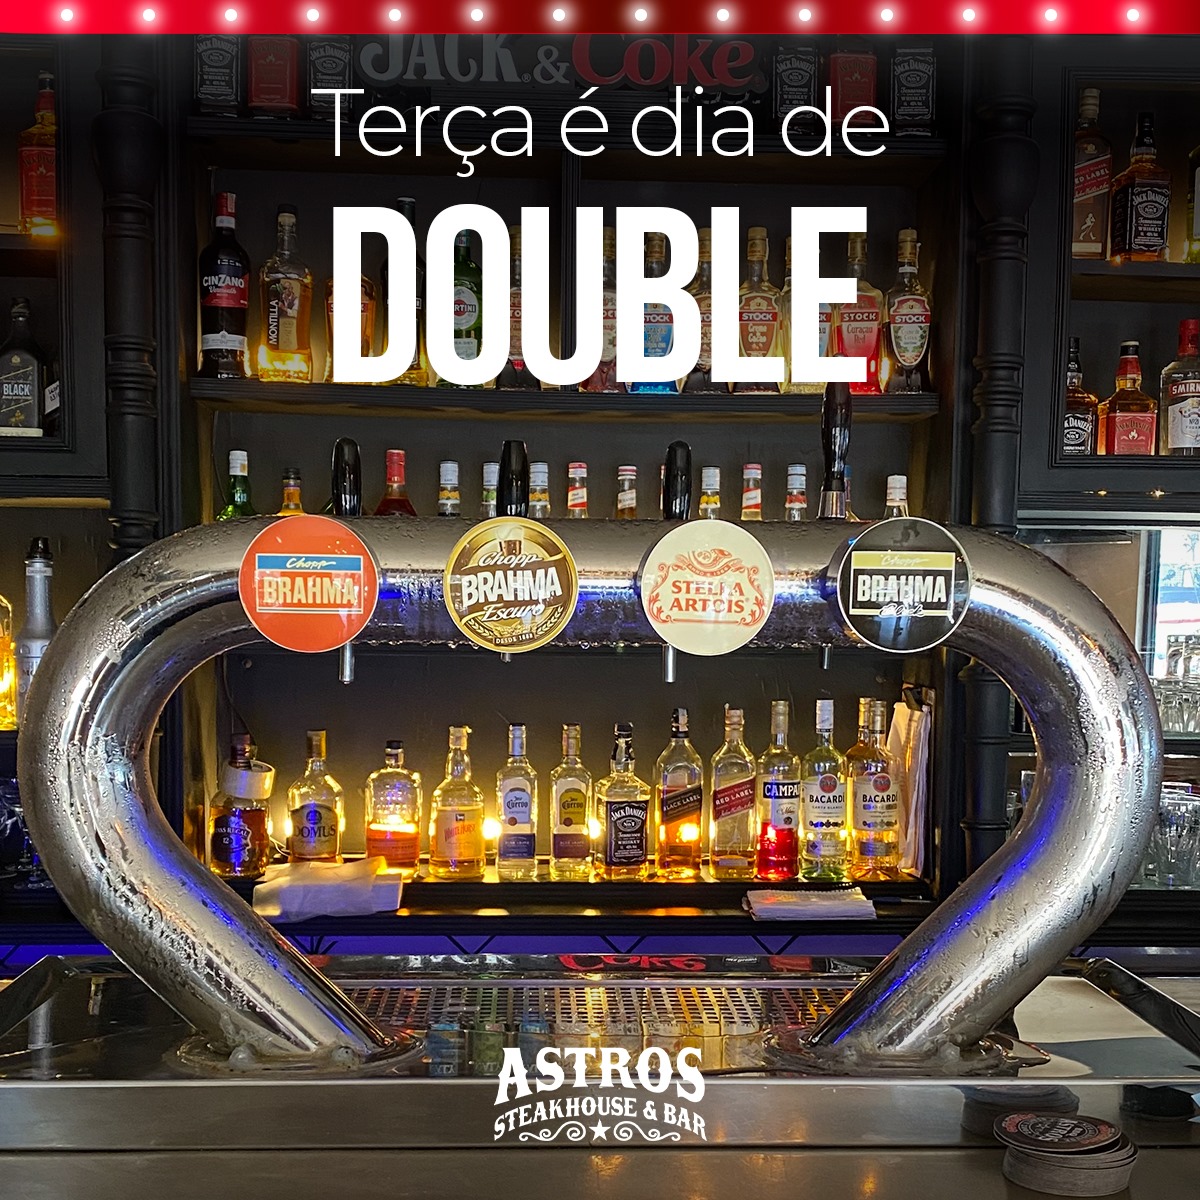 Astros Steakhouse & Bar slide 2